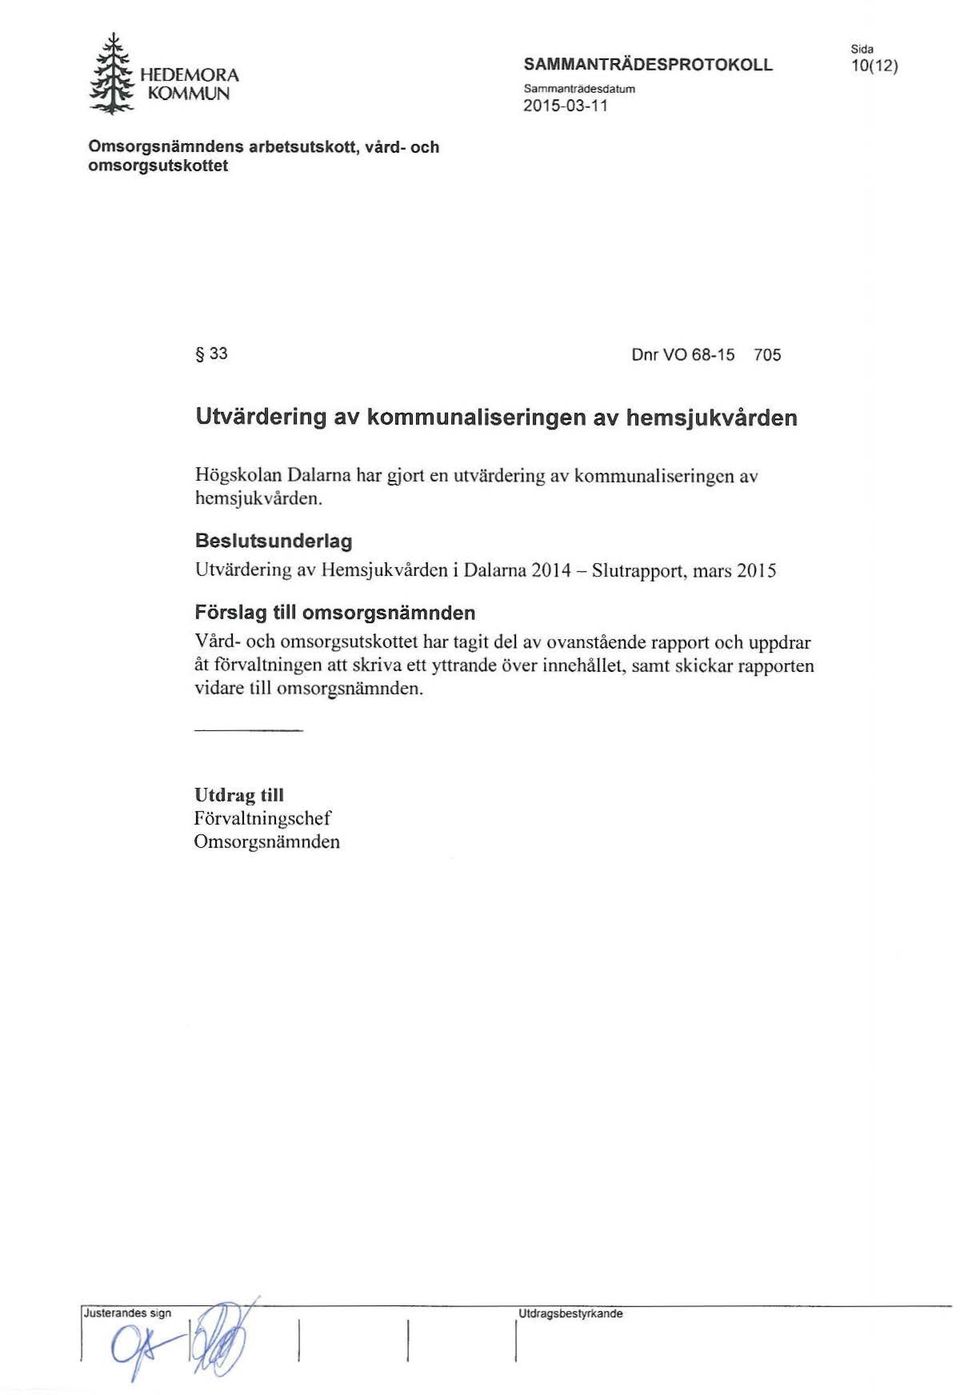 Besluts underlag Utvärdering av Hemsjukvården i Dalarna 2014 - Slutrapport, mars 2015 Förslag till omsorgsnämnden Vård- och har tagit